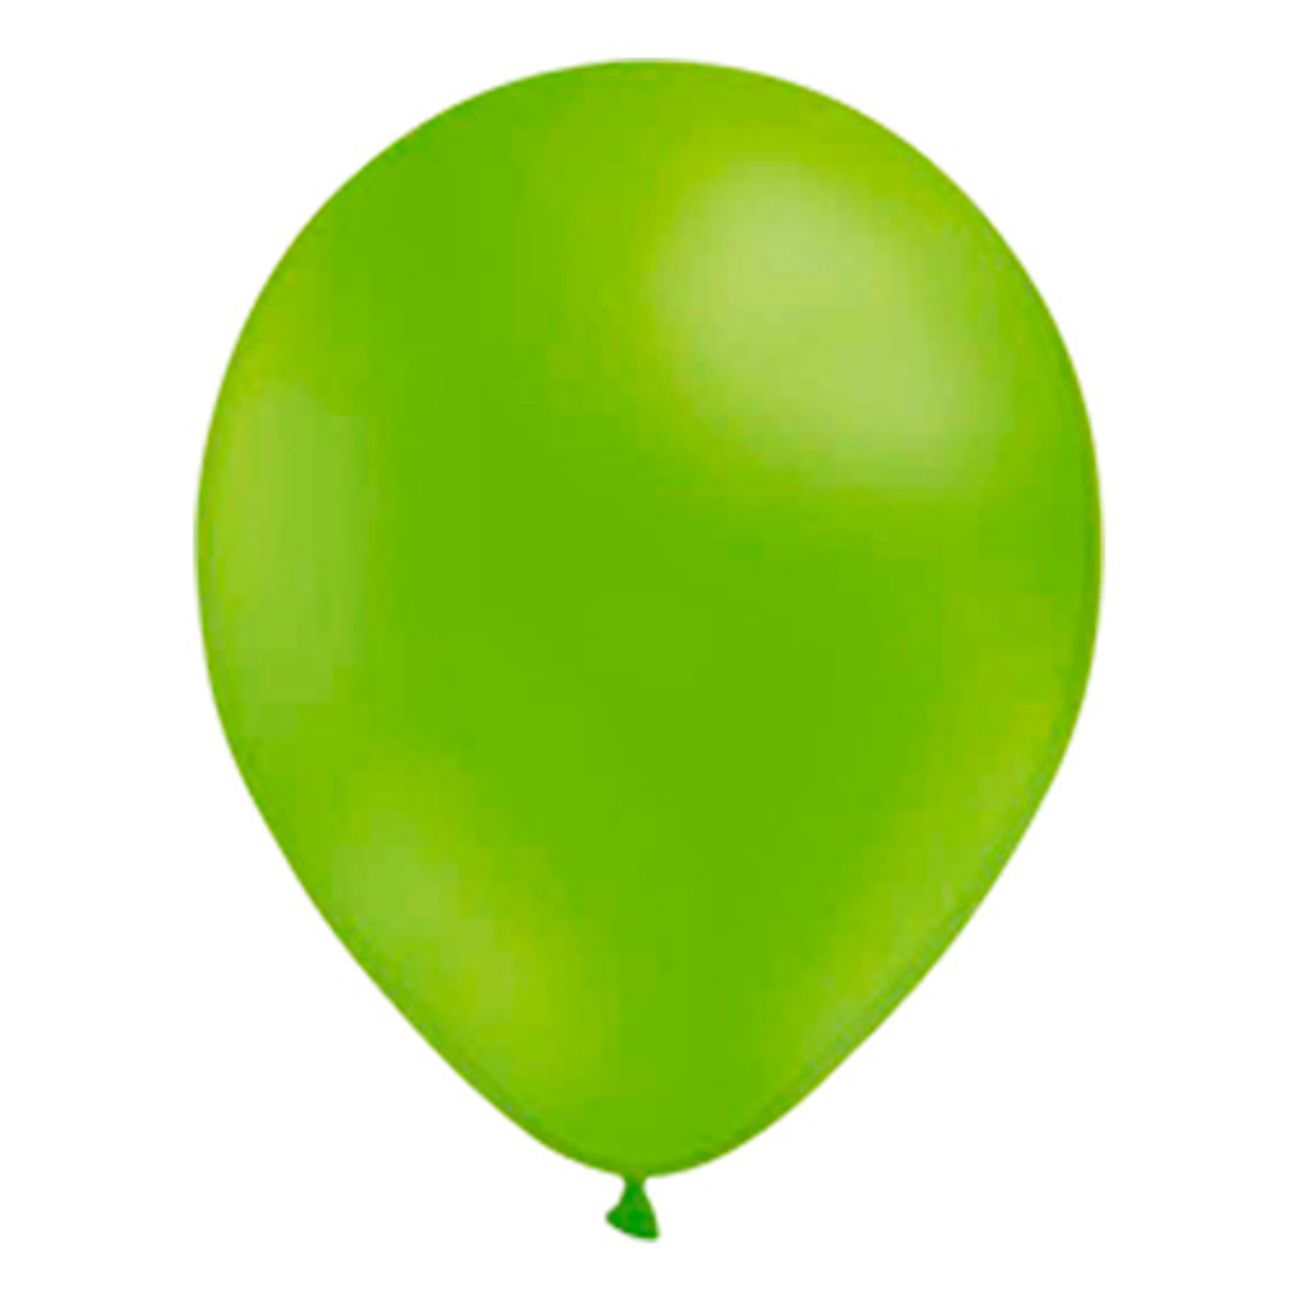 stora-ballonger-limegrona-1